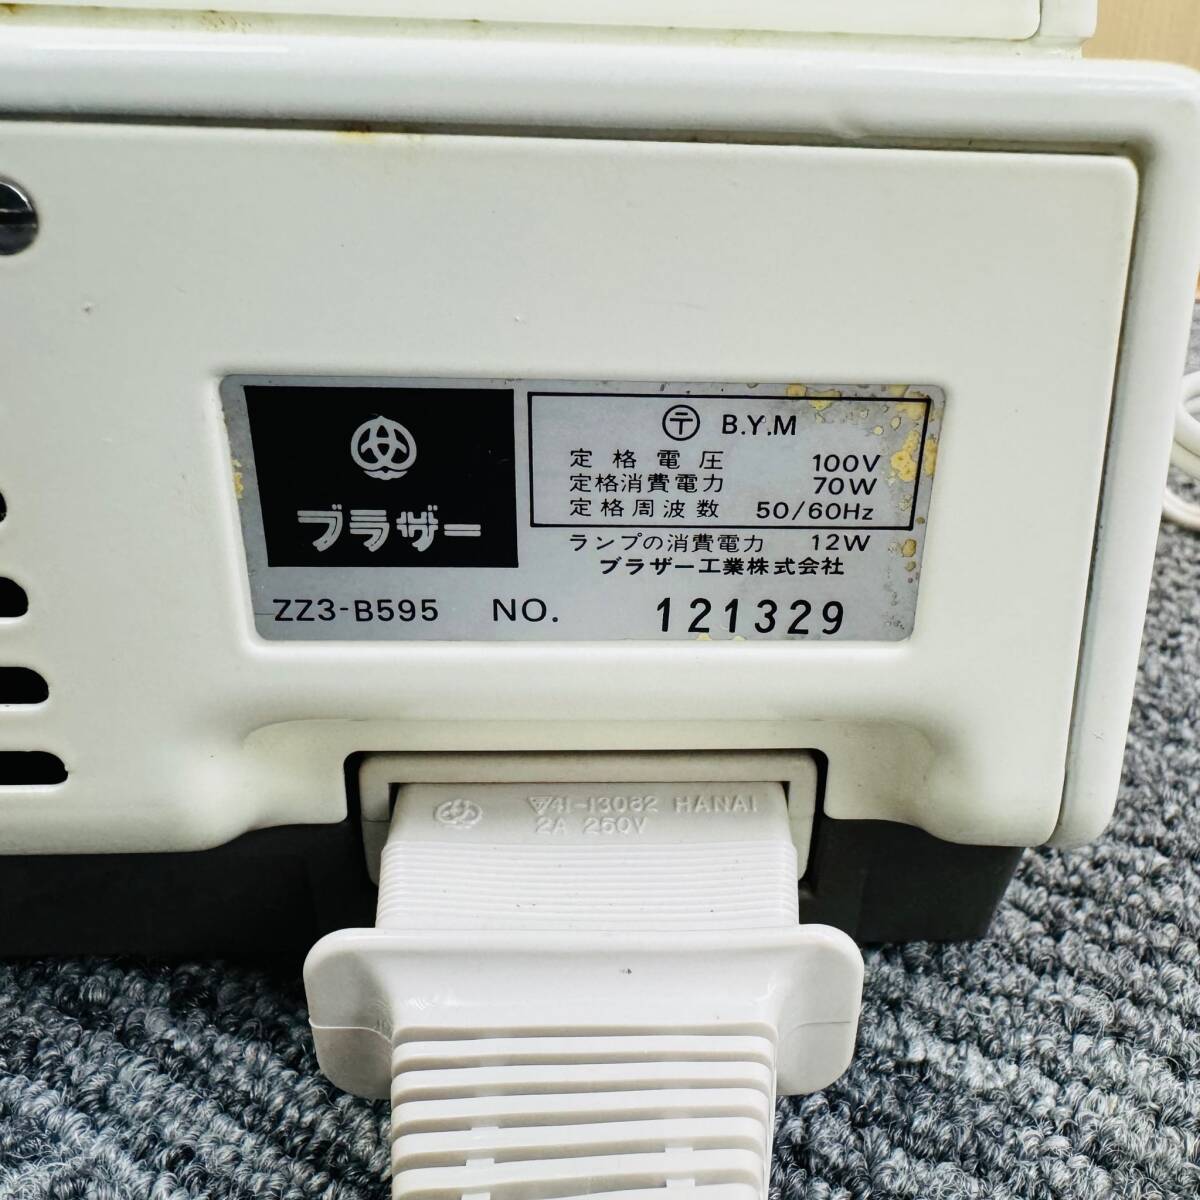 Brother Brother швейная машина Select E foot педаль рукоделие ручная работа электризация проверка 0 б/у товар работоспособность не проверялась дешевый 1 иен лот 8004